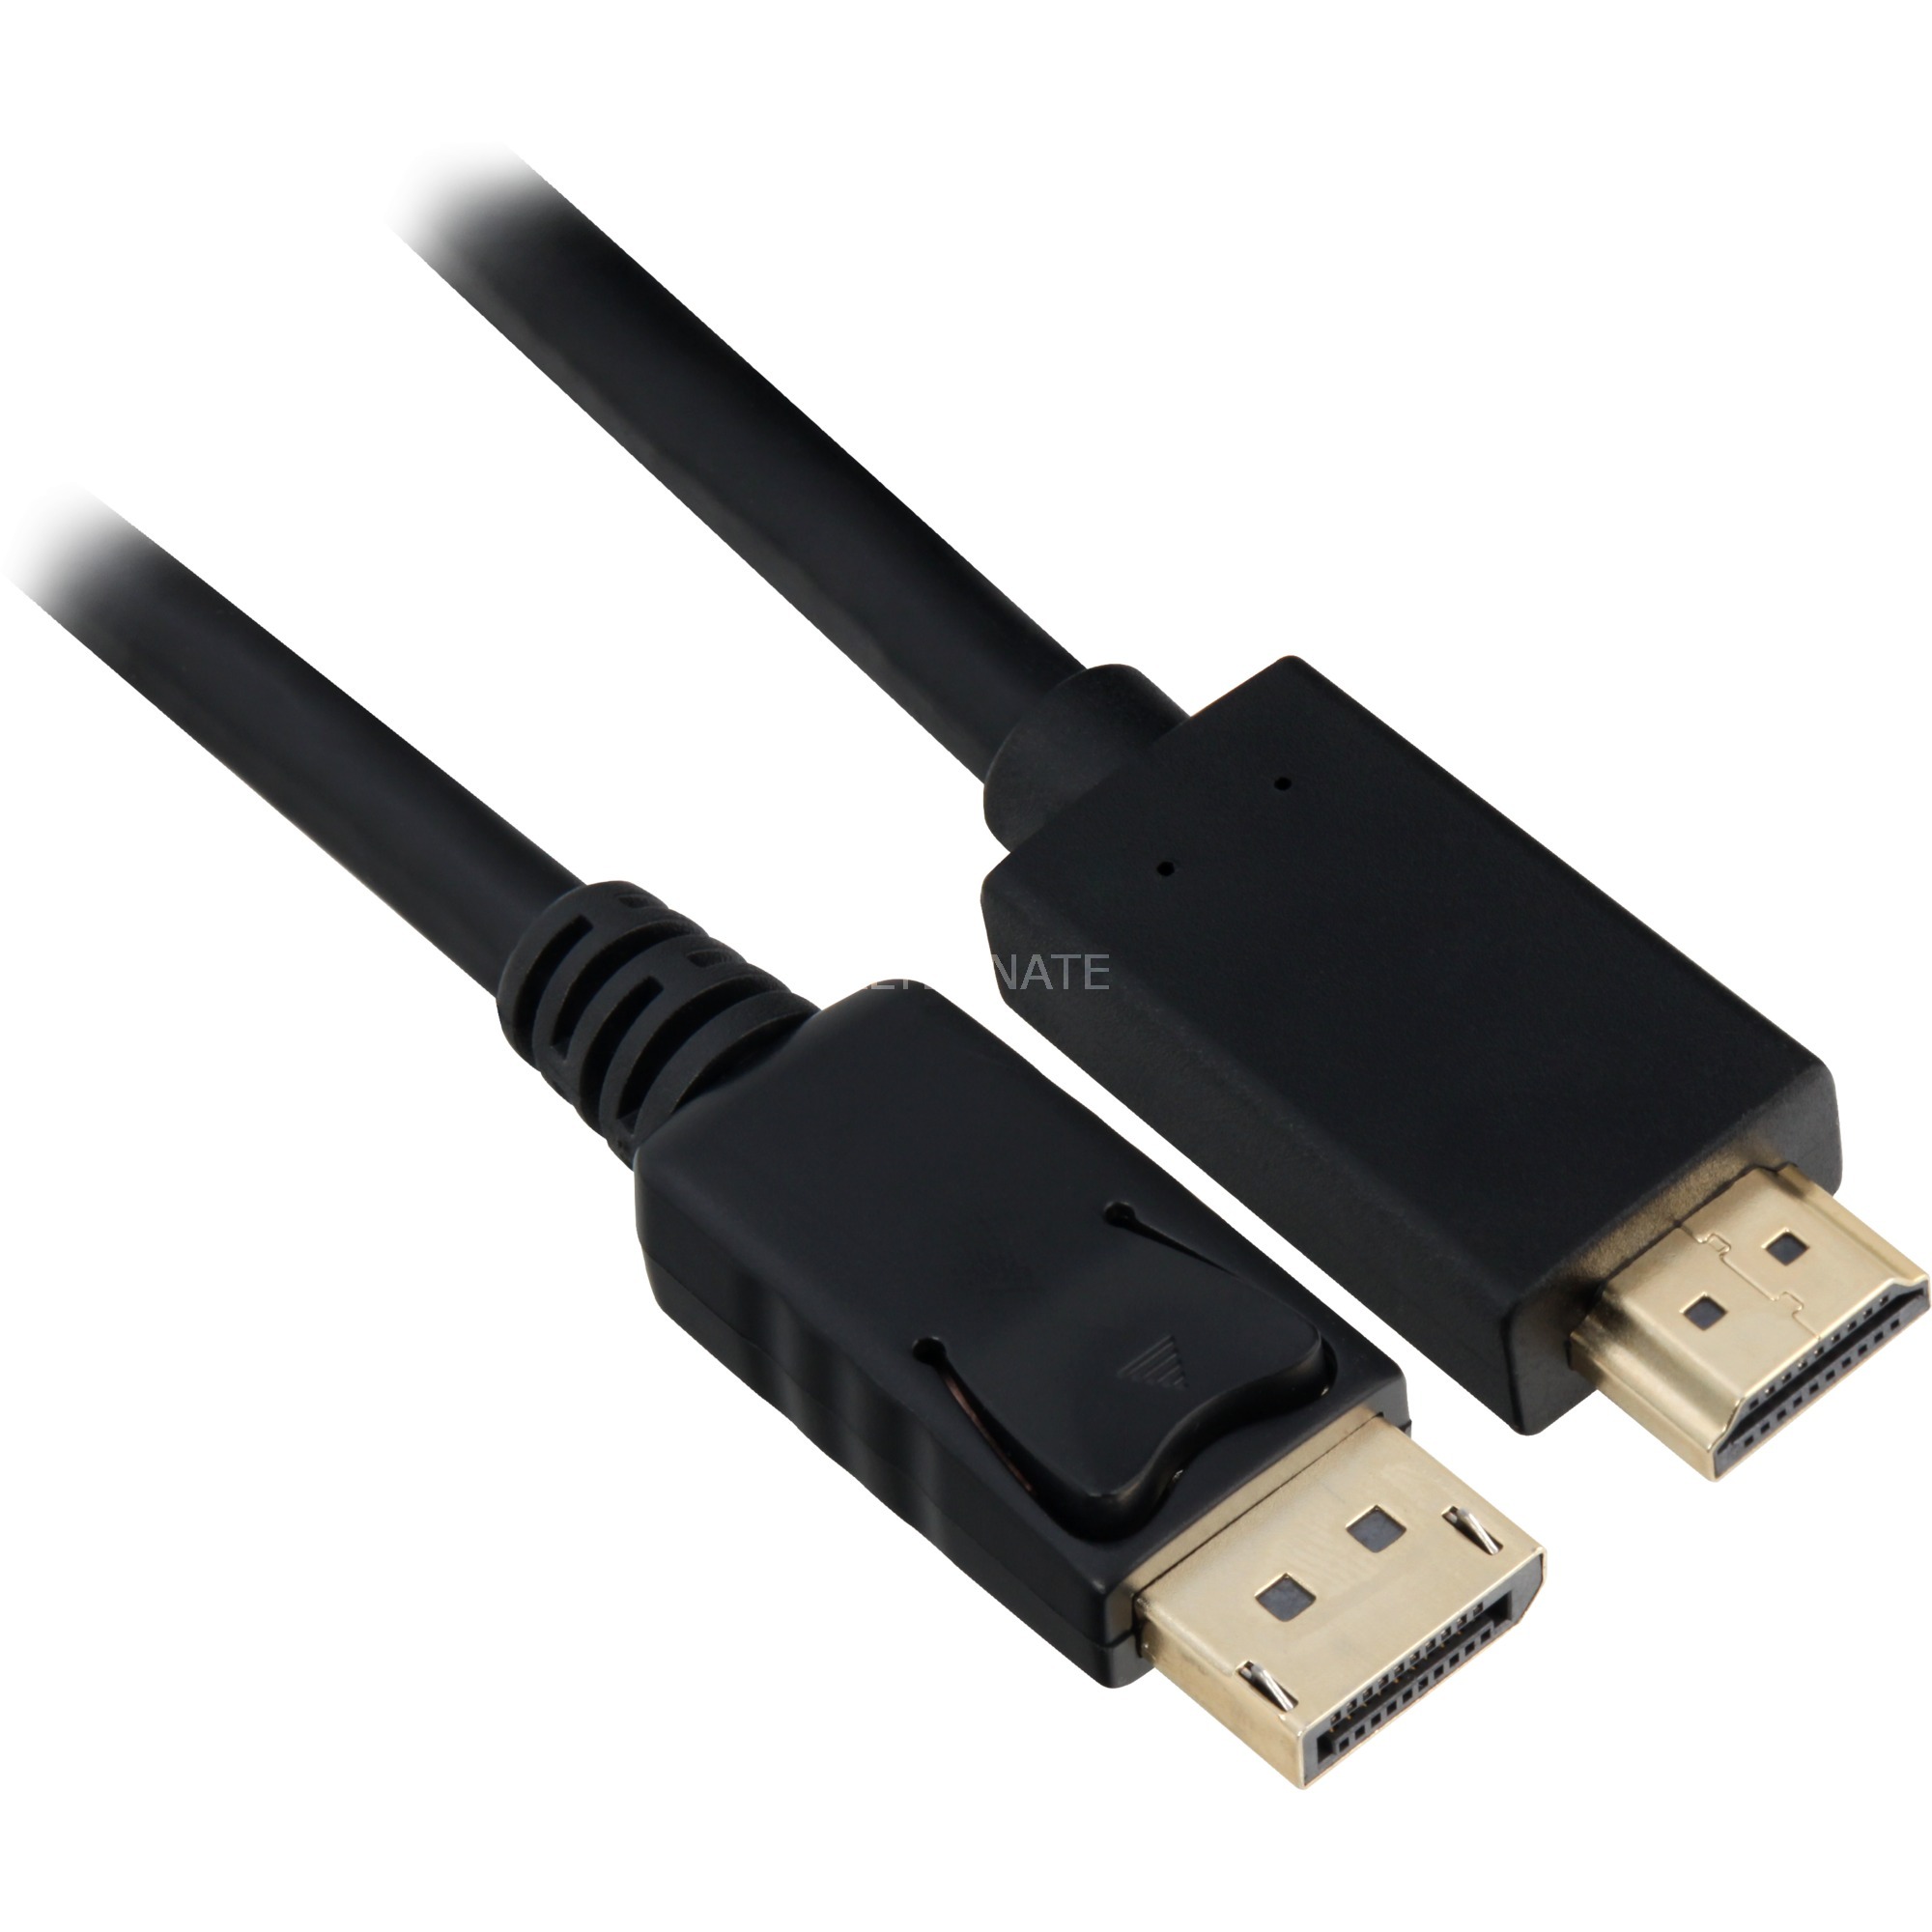 Image of Alternate - Adapterkabel Displayport 1.2 Stecker > HDMI 4K Stecker online einkaufen bei Alternate